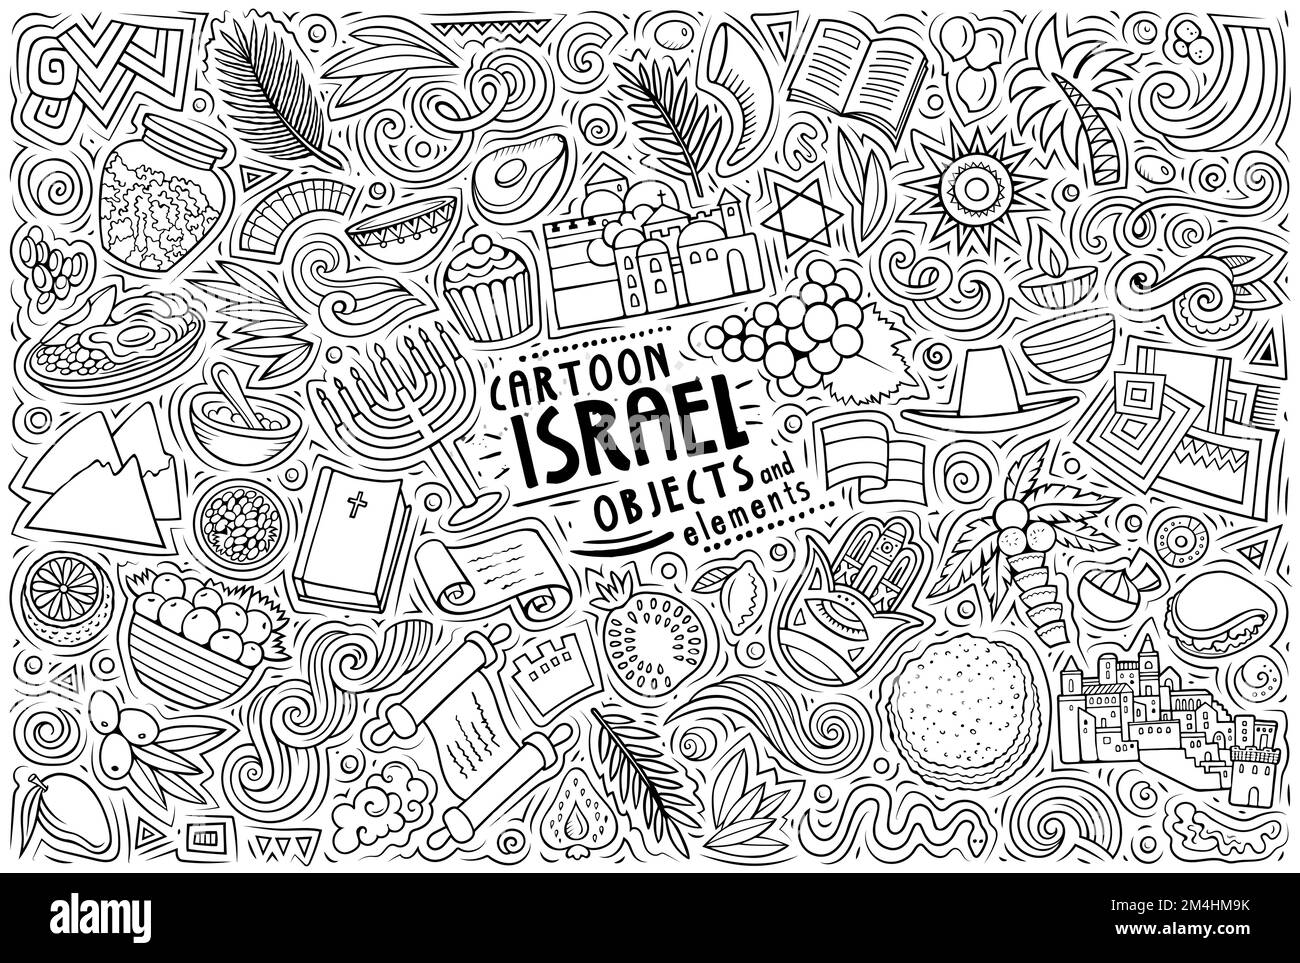 Cartoon-Vektor-Doodle-Set mit traditionellen Symbolen, Gegenständen und Objekten von Yisrael Stock Vektor